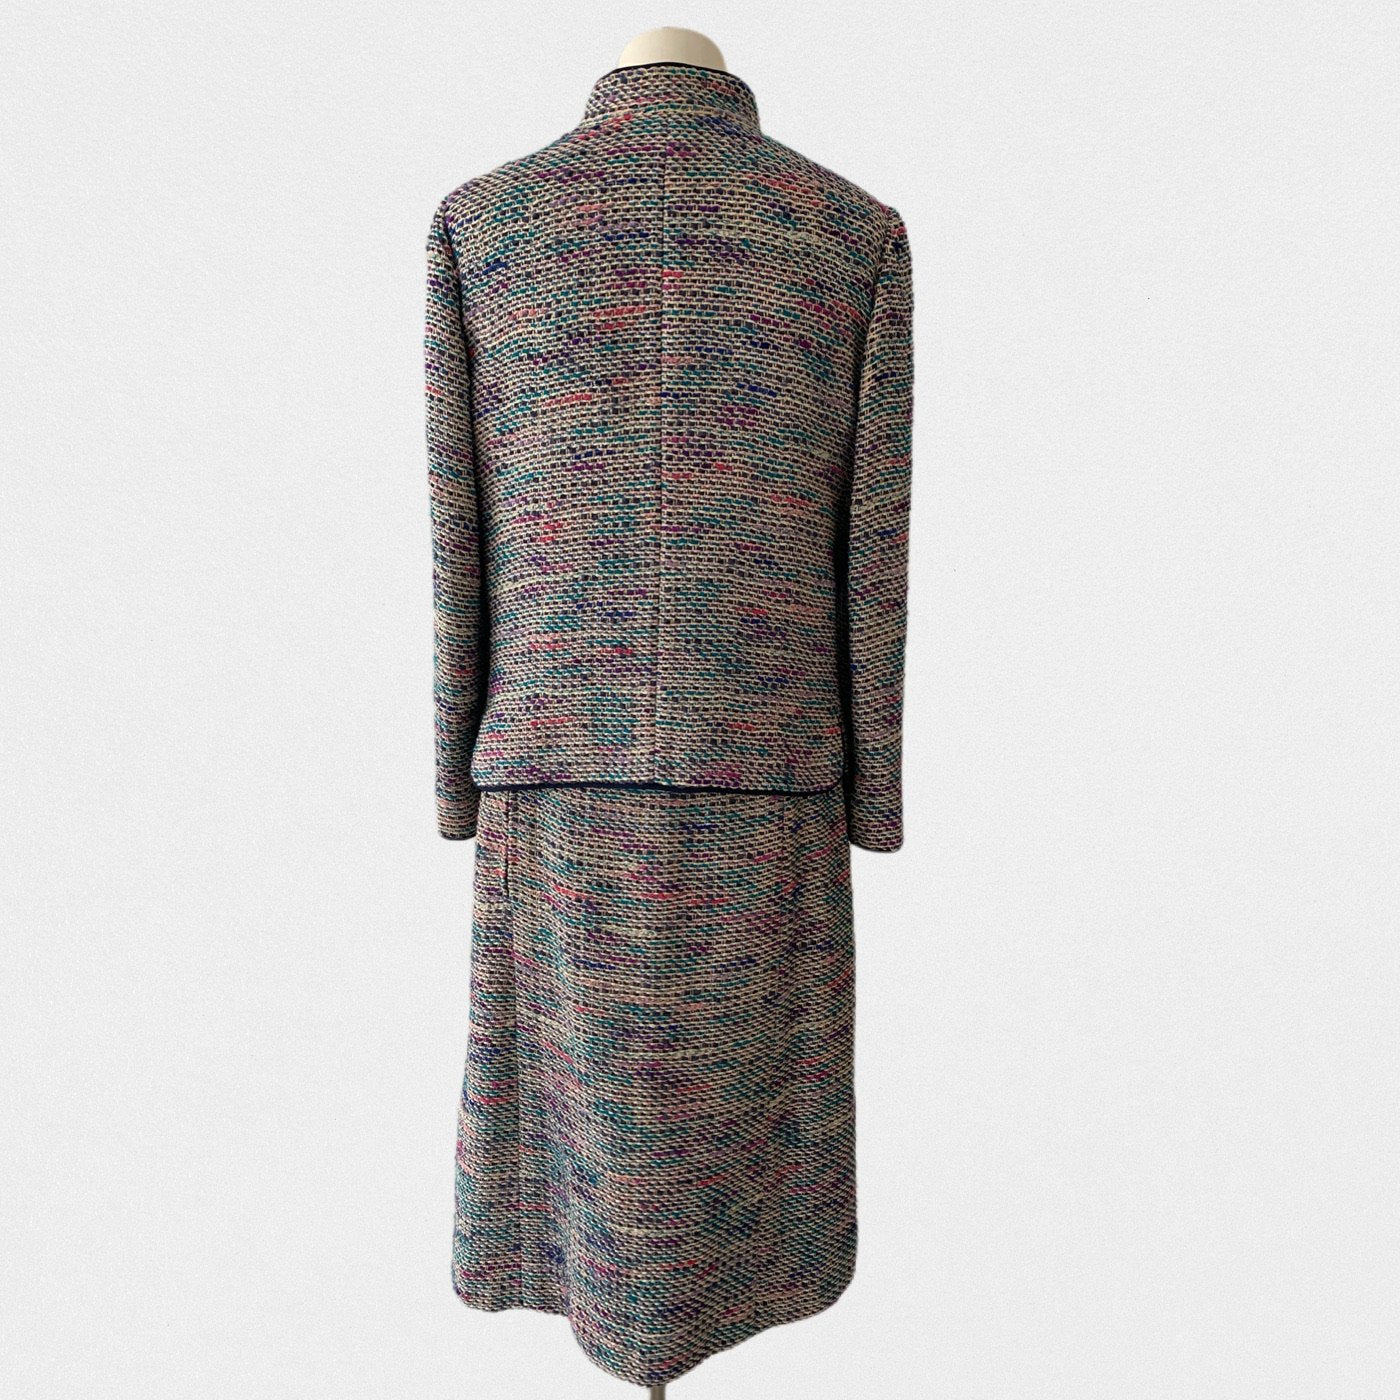 Lysis vintage Chanel suit - XL - 1974